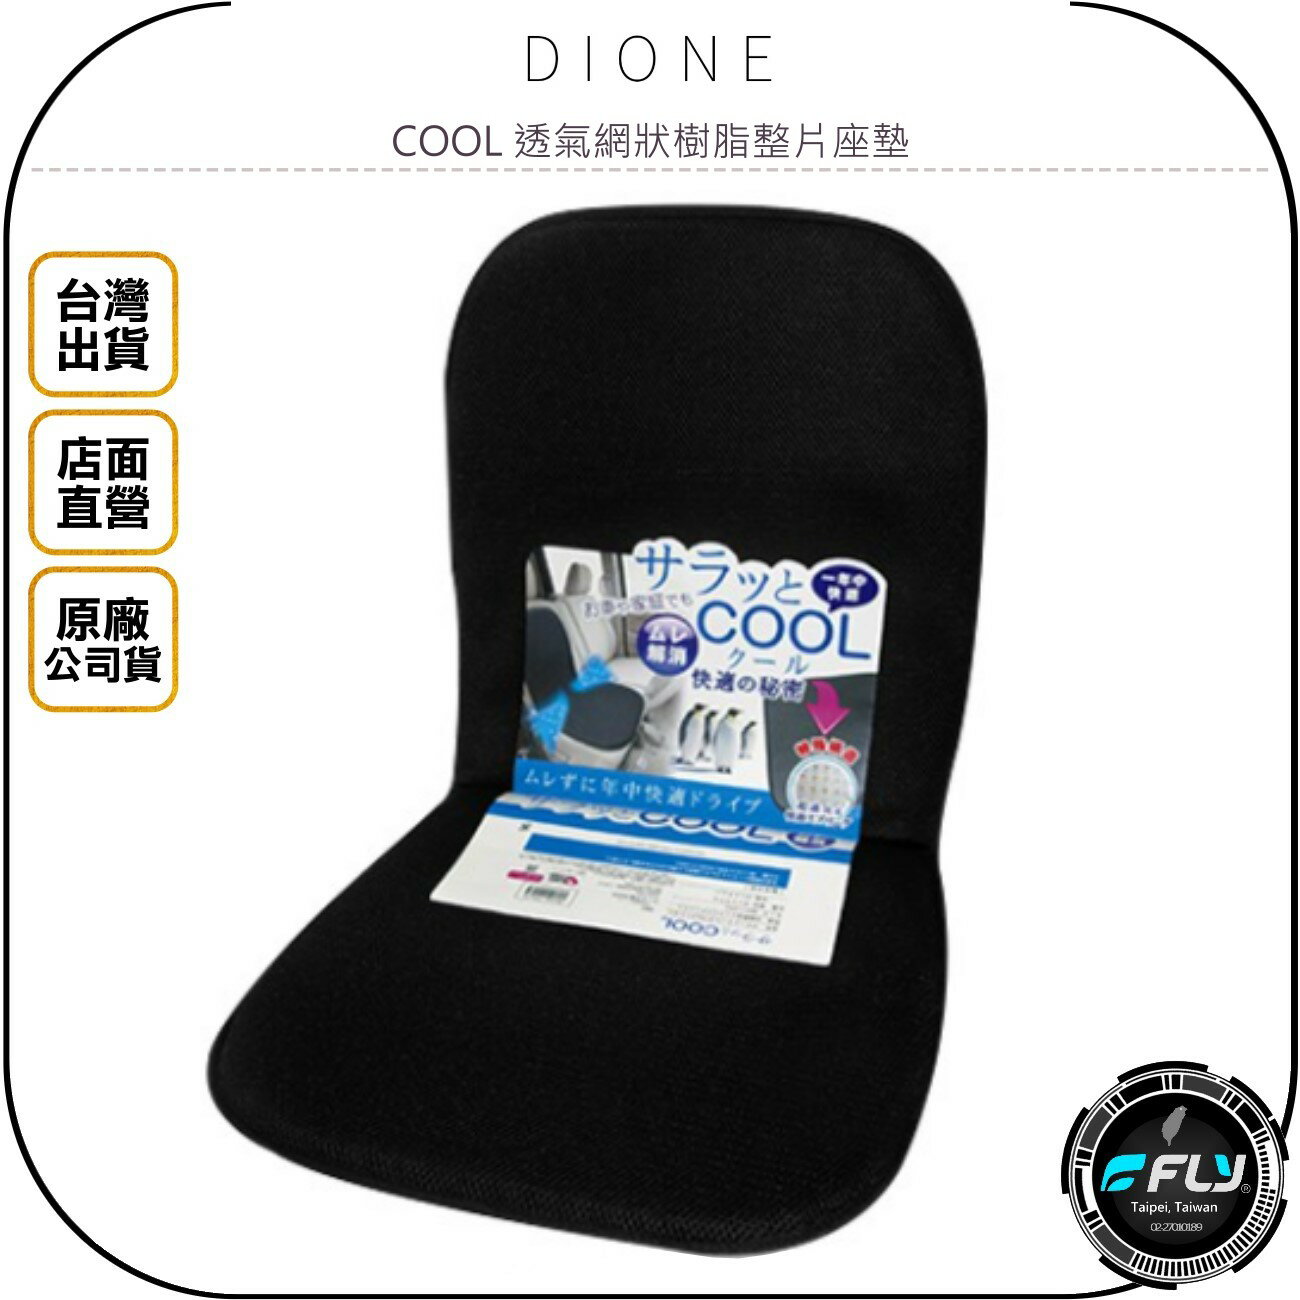 《飛翔無線3C》DIONE COOL 透氣網狀樹脂整片座墊◉公司貨◉日本進口◉車用舒適背靠坐墊